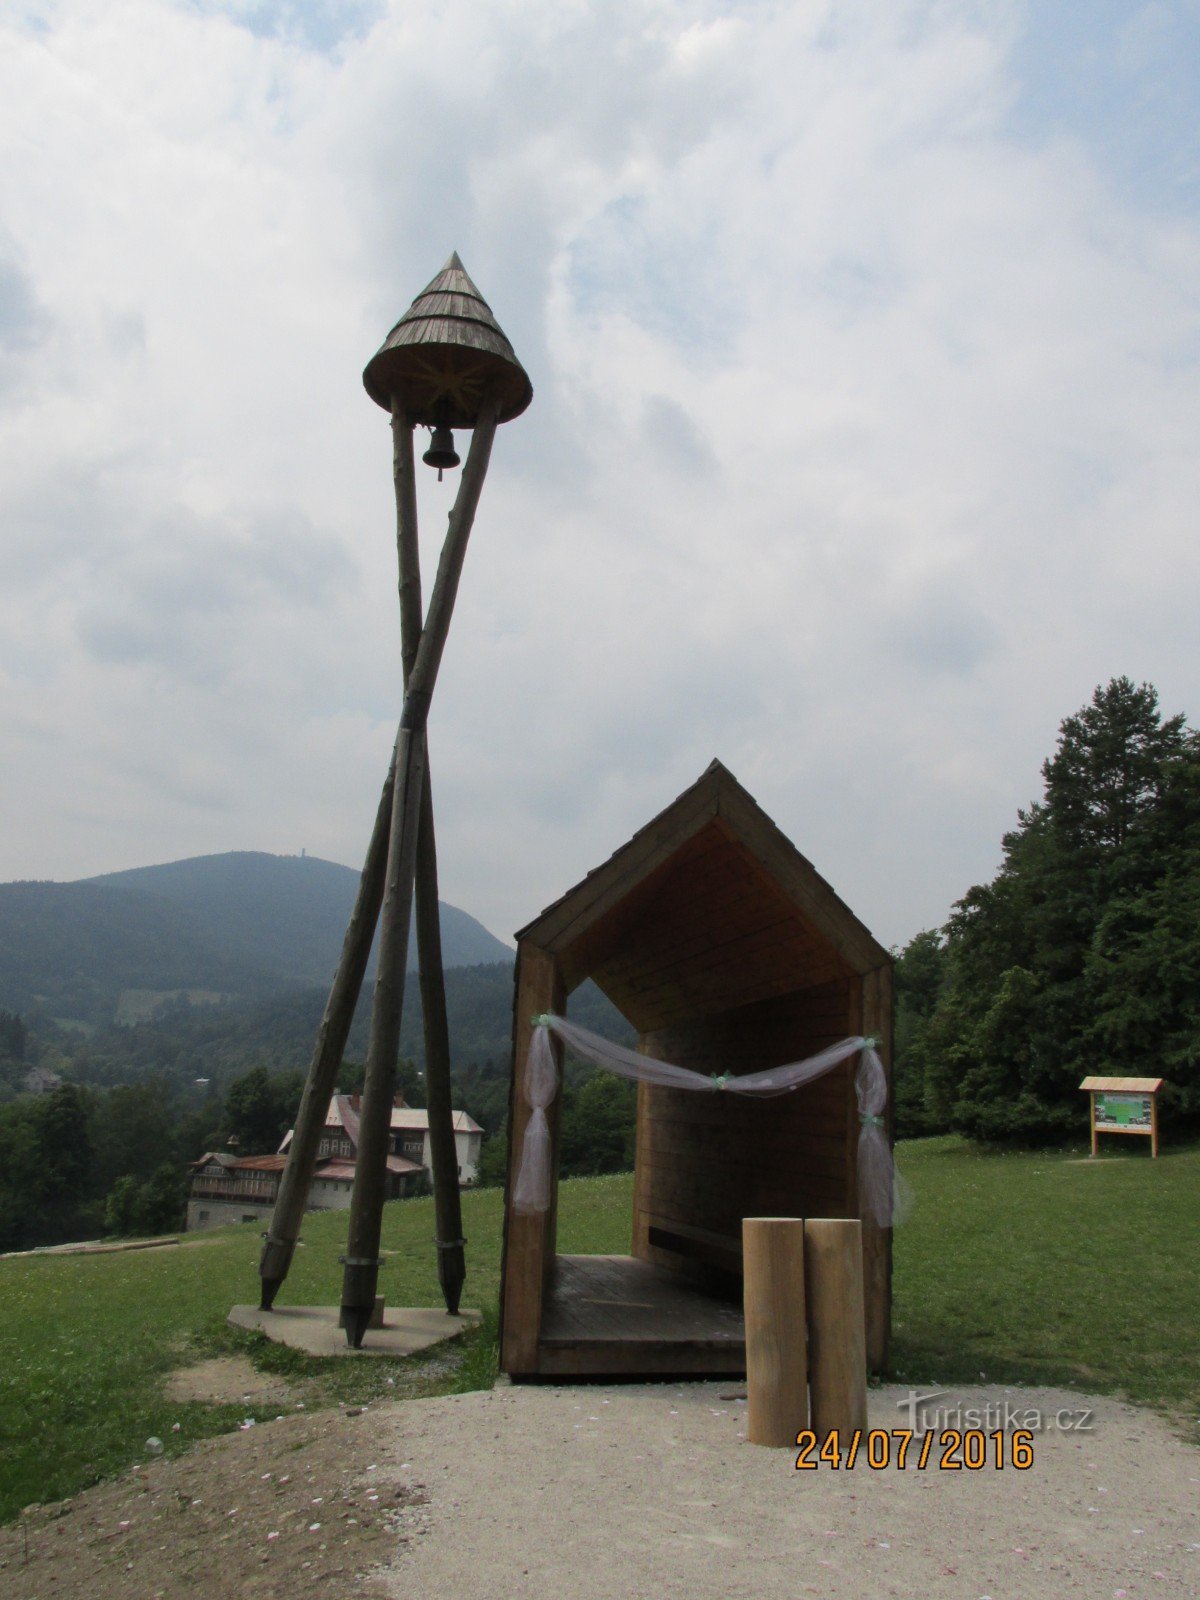 Tháp chuông ở Horečky-Strážkiné Beskyd